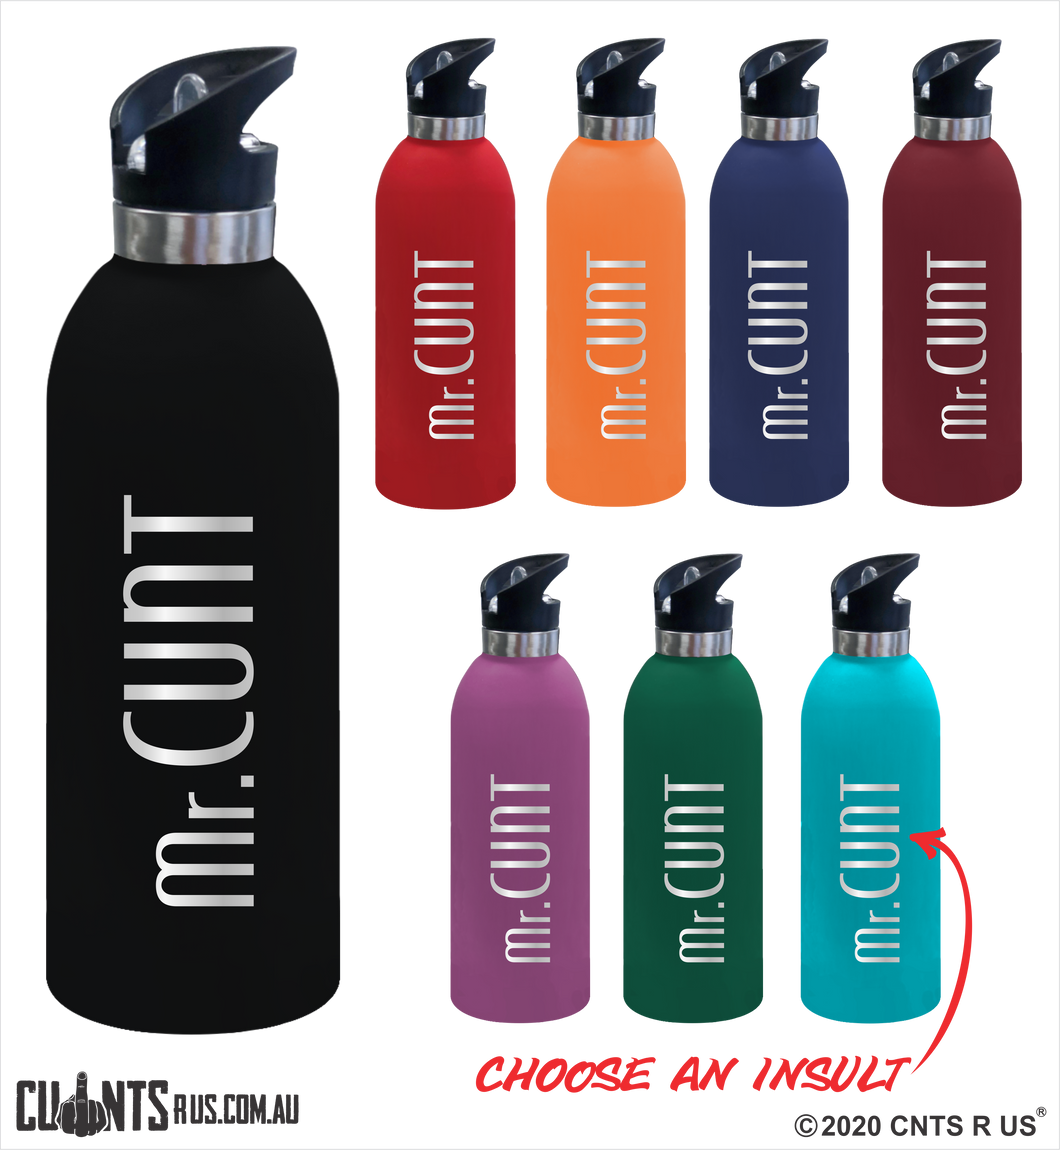 Mr Cunt 1 Litre Drink Bottle Laser Engraved Gift - CRU08-68-21002